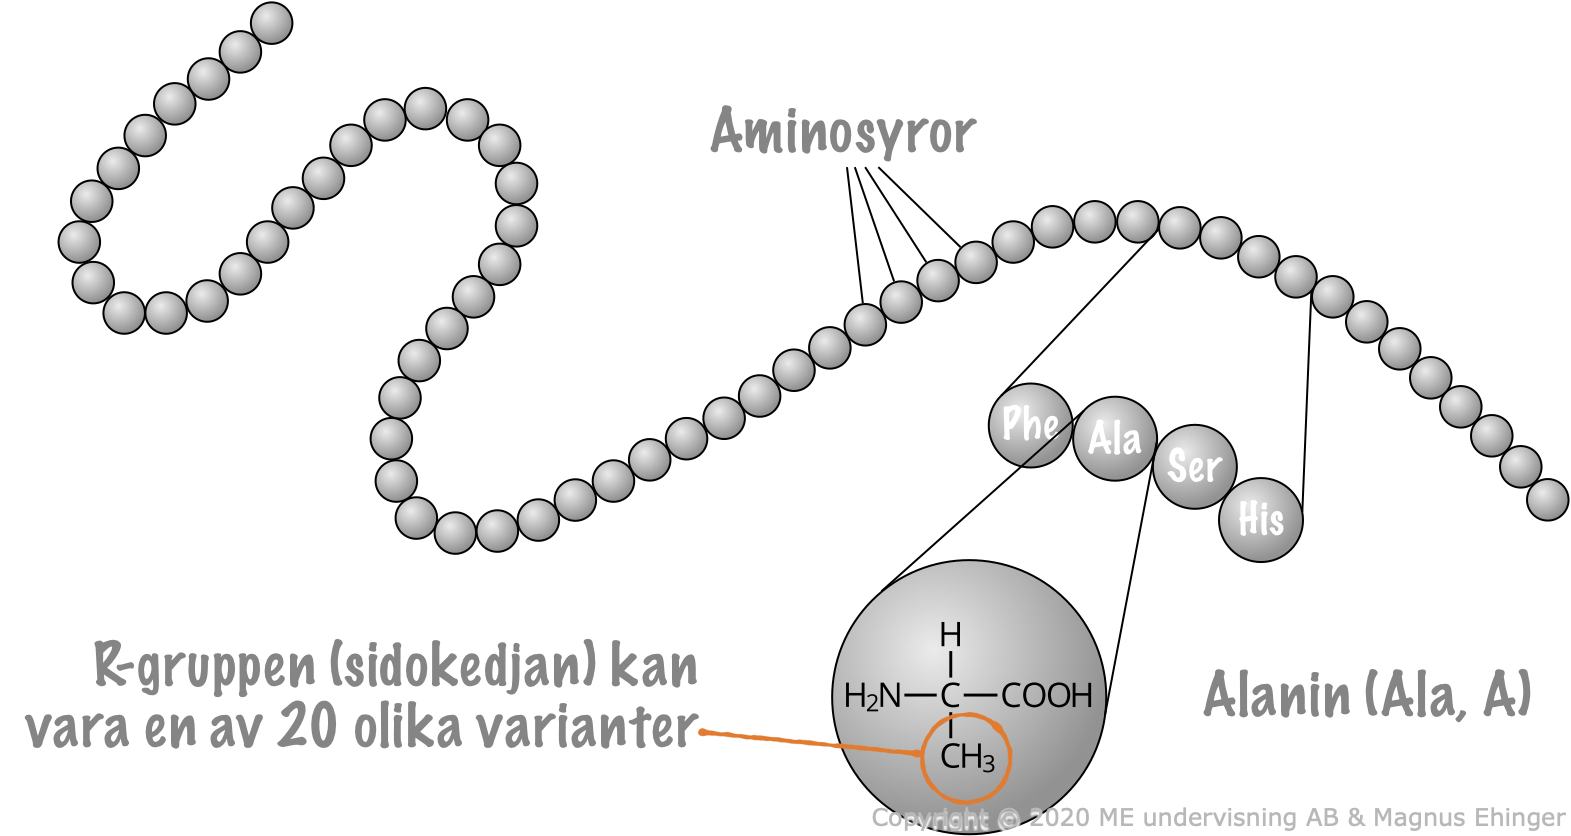 Proteiner består av långa kedjor av aminosyror